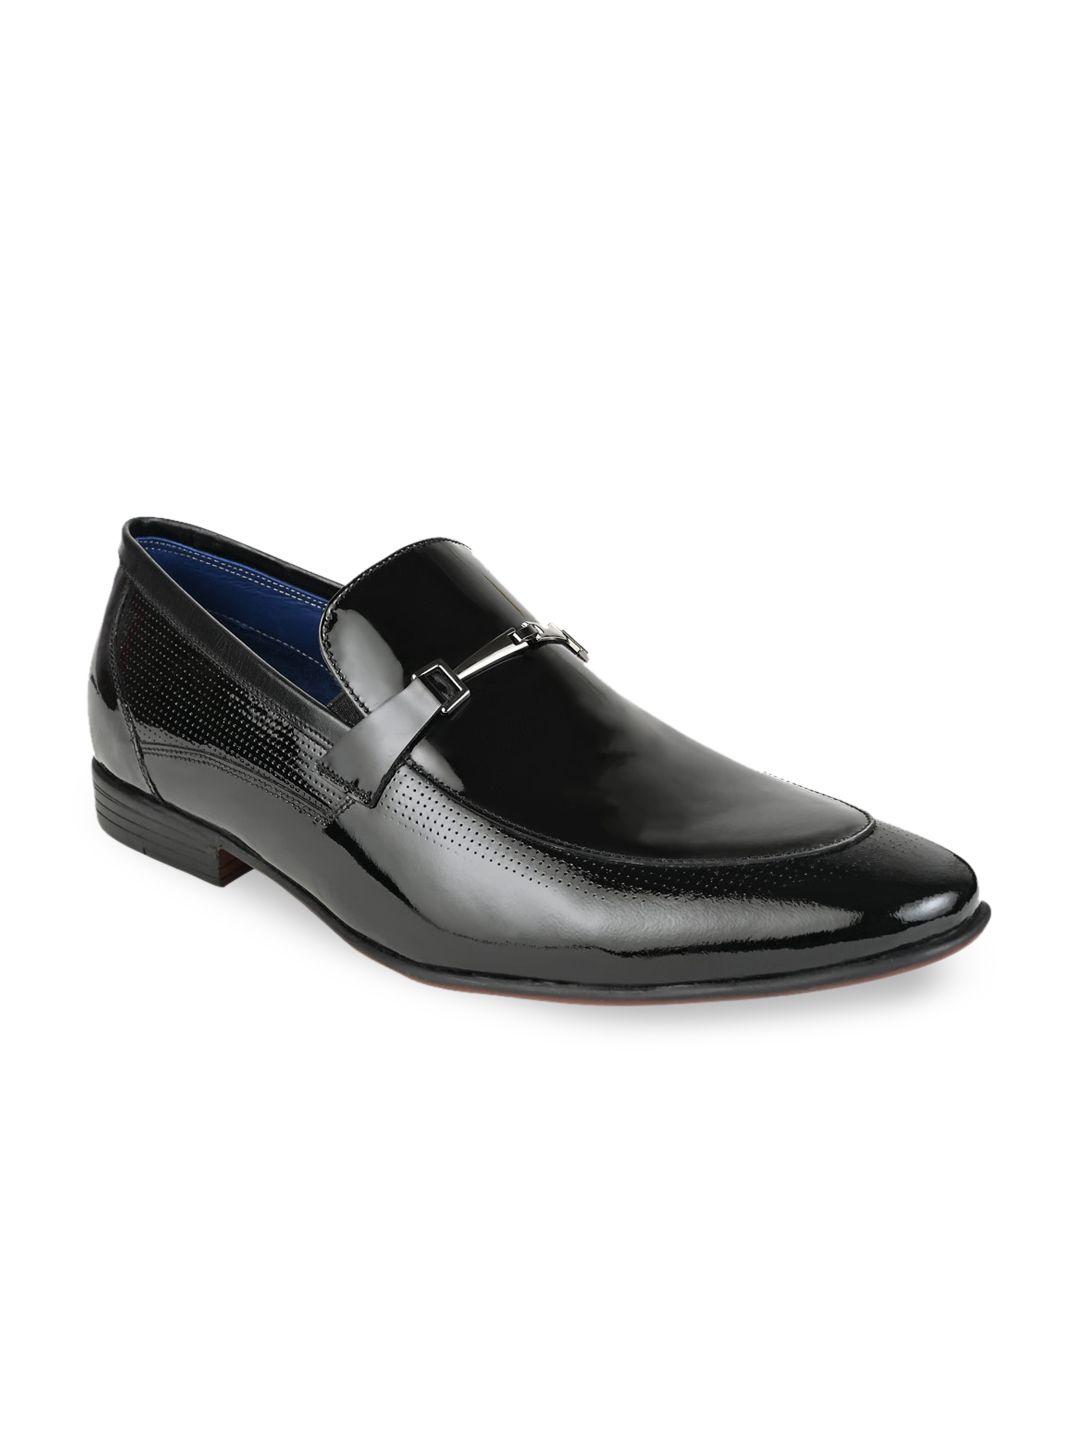 regal men black solid formal slip on shoes